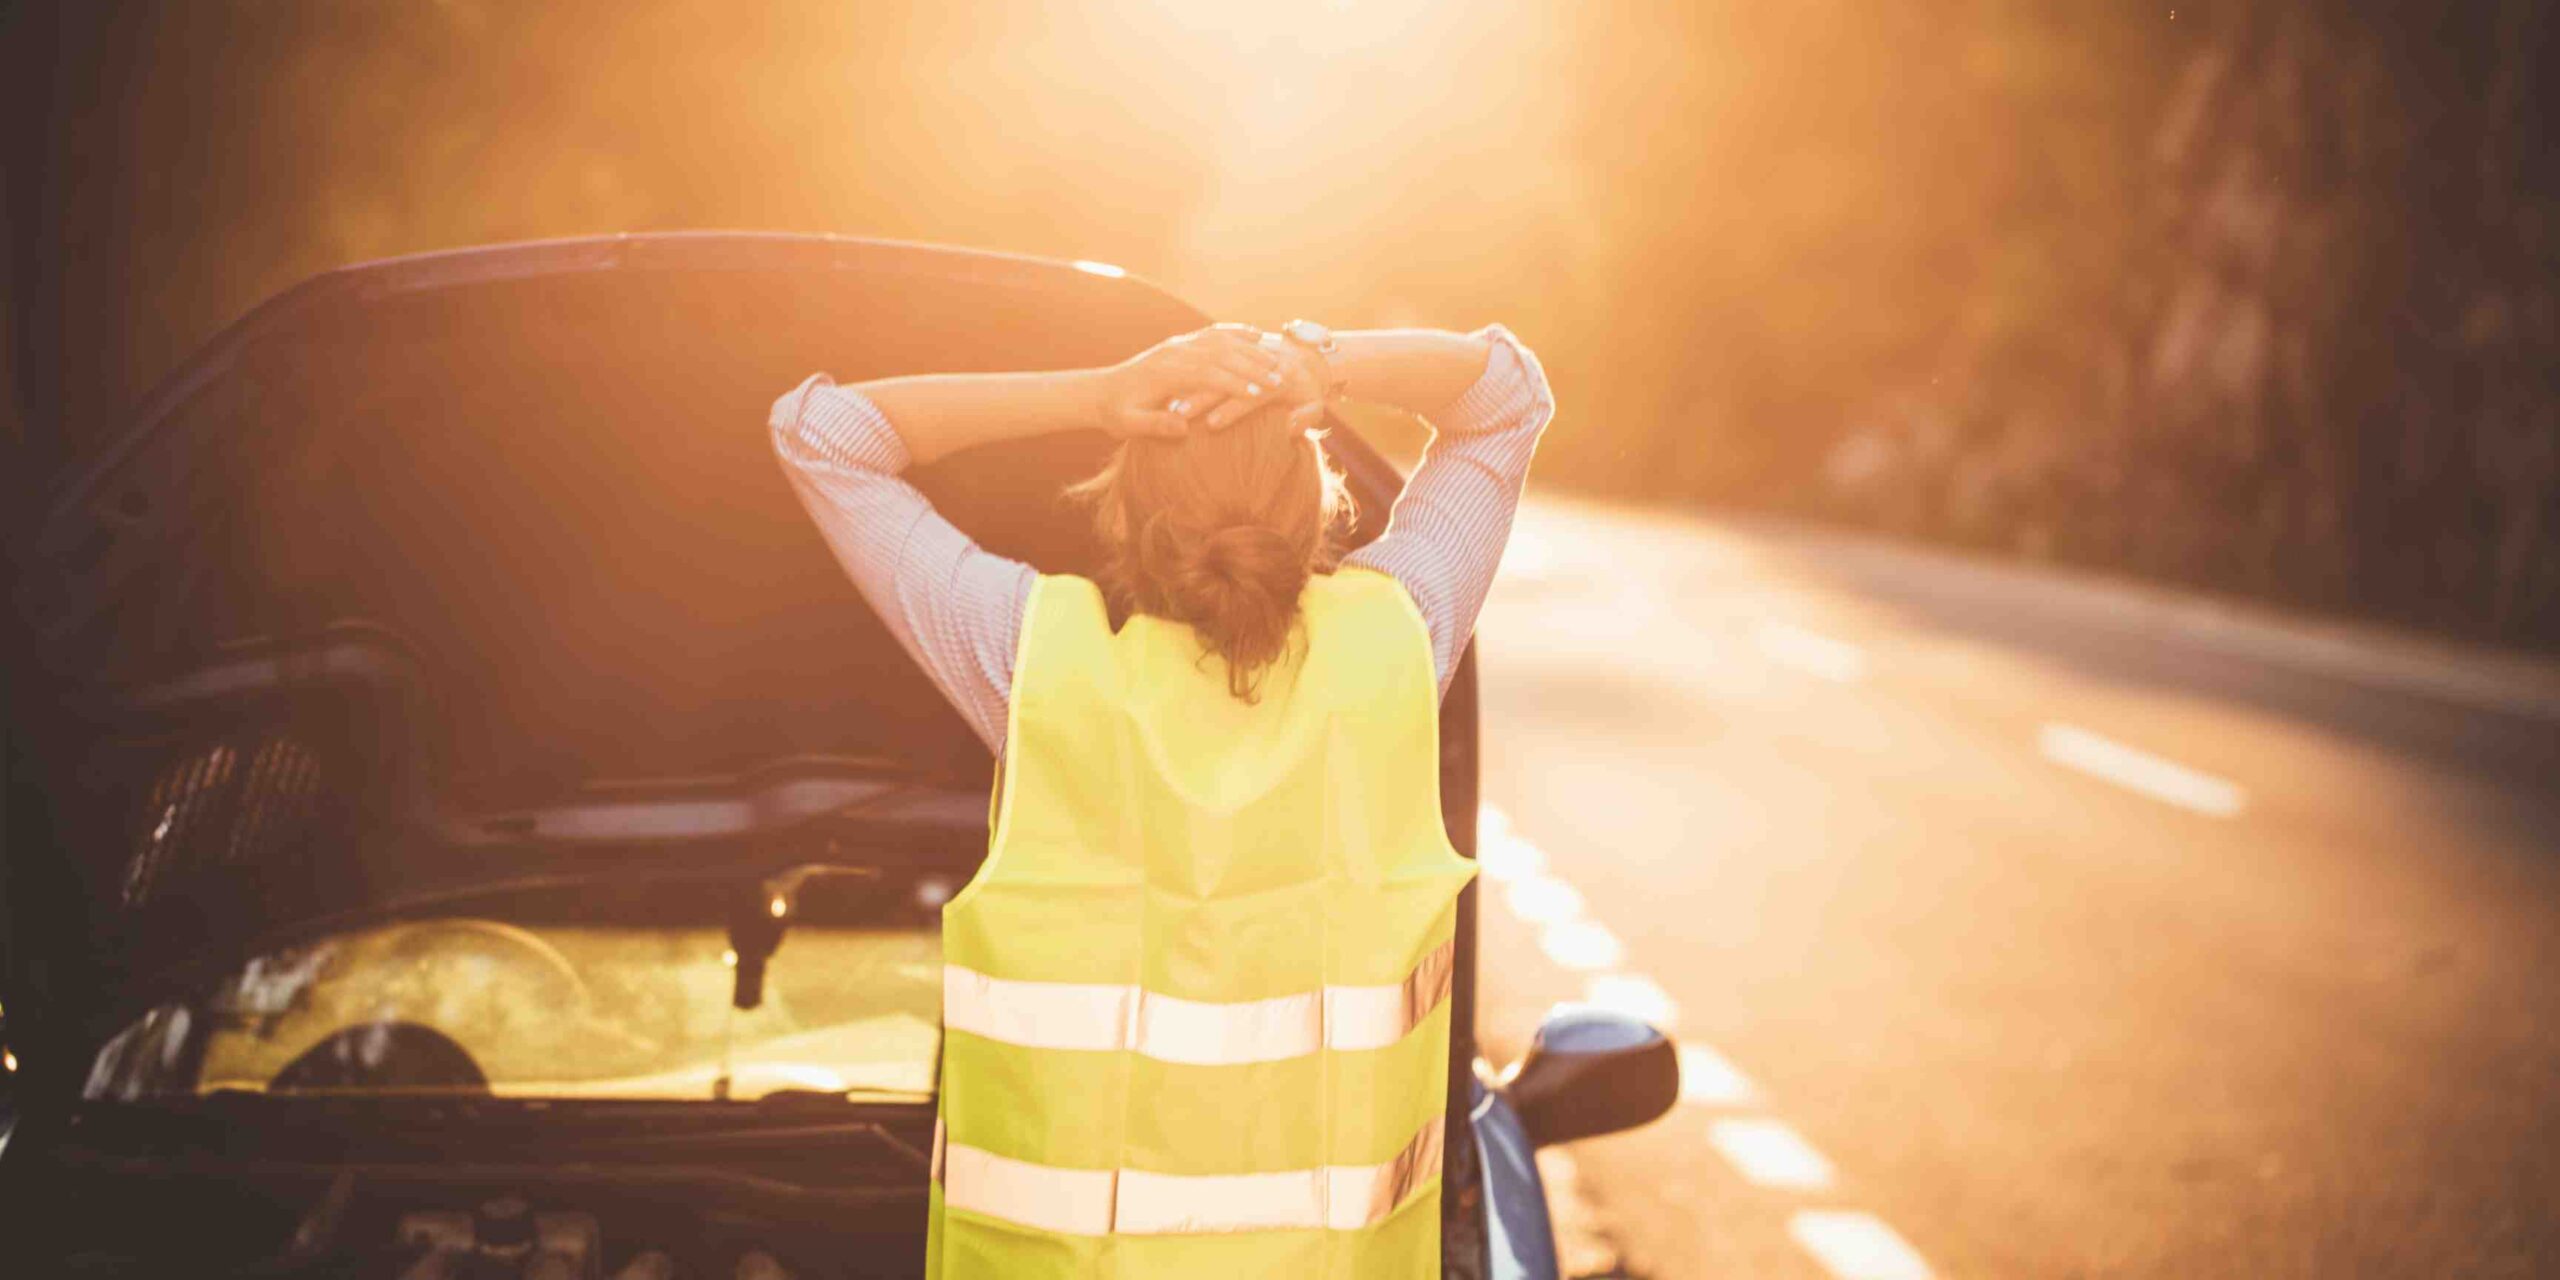 3 descuidos que pueden causar averías graves en tu coche